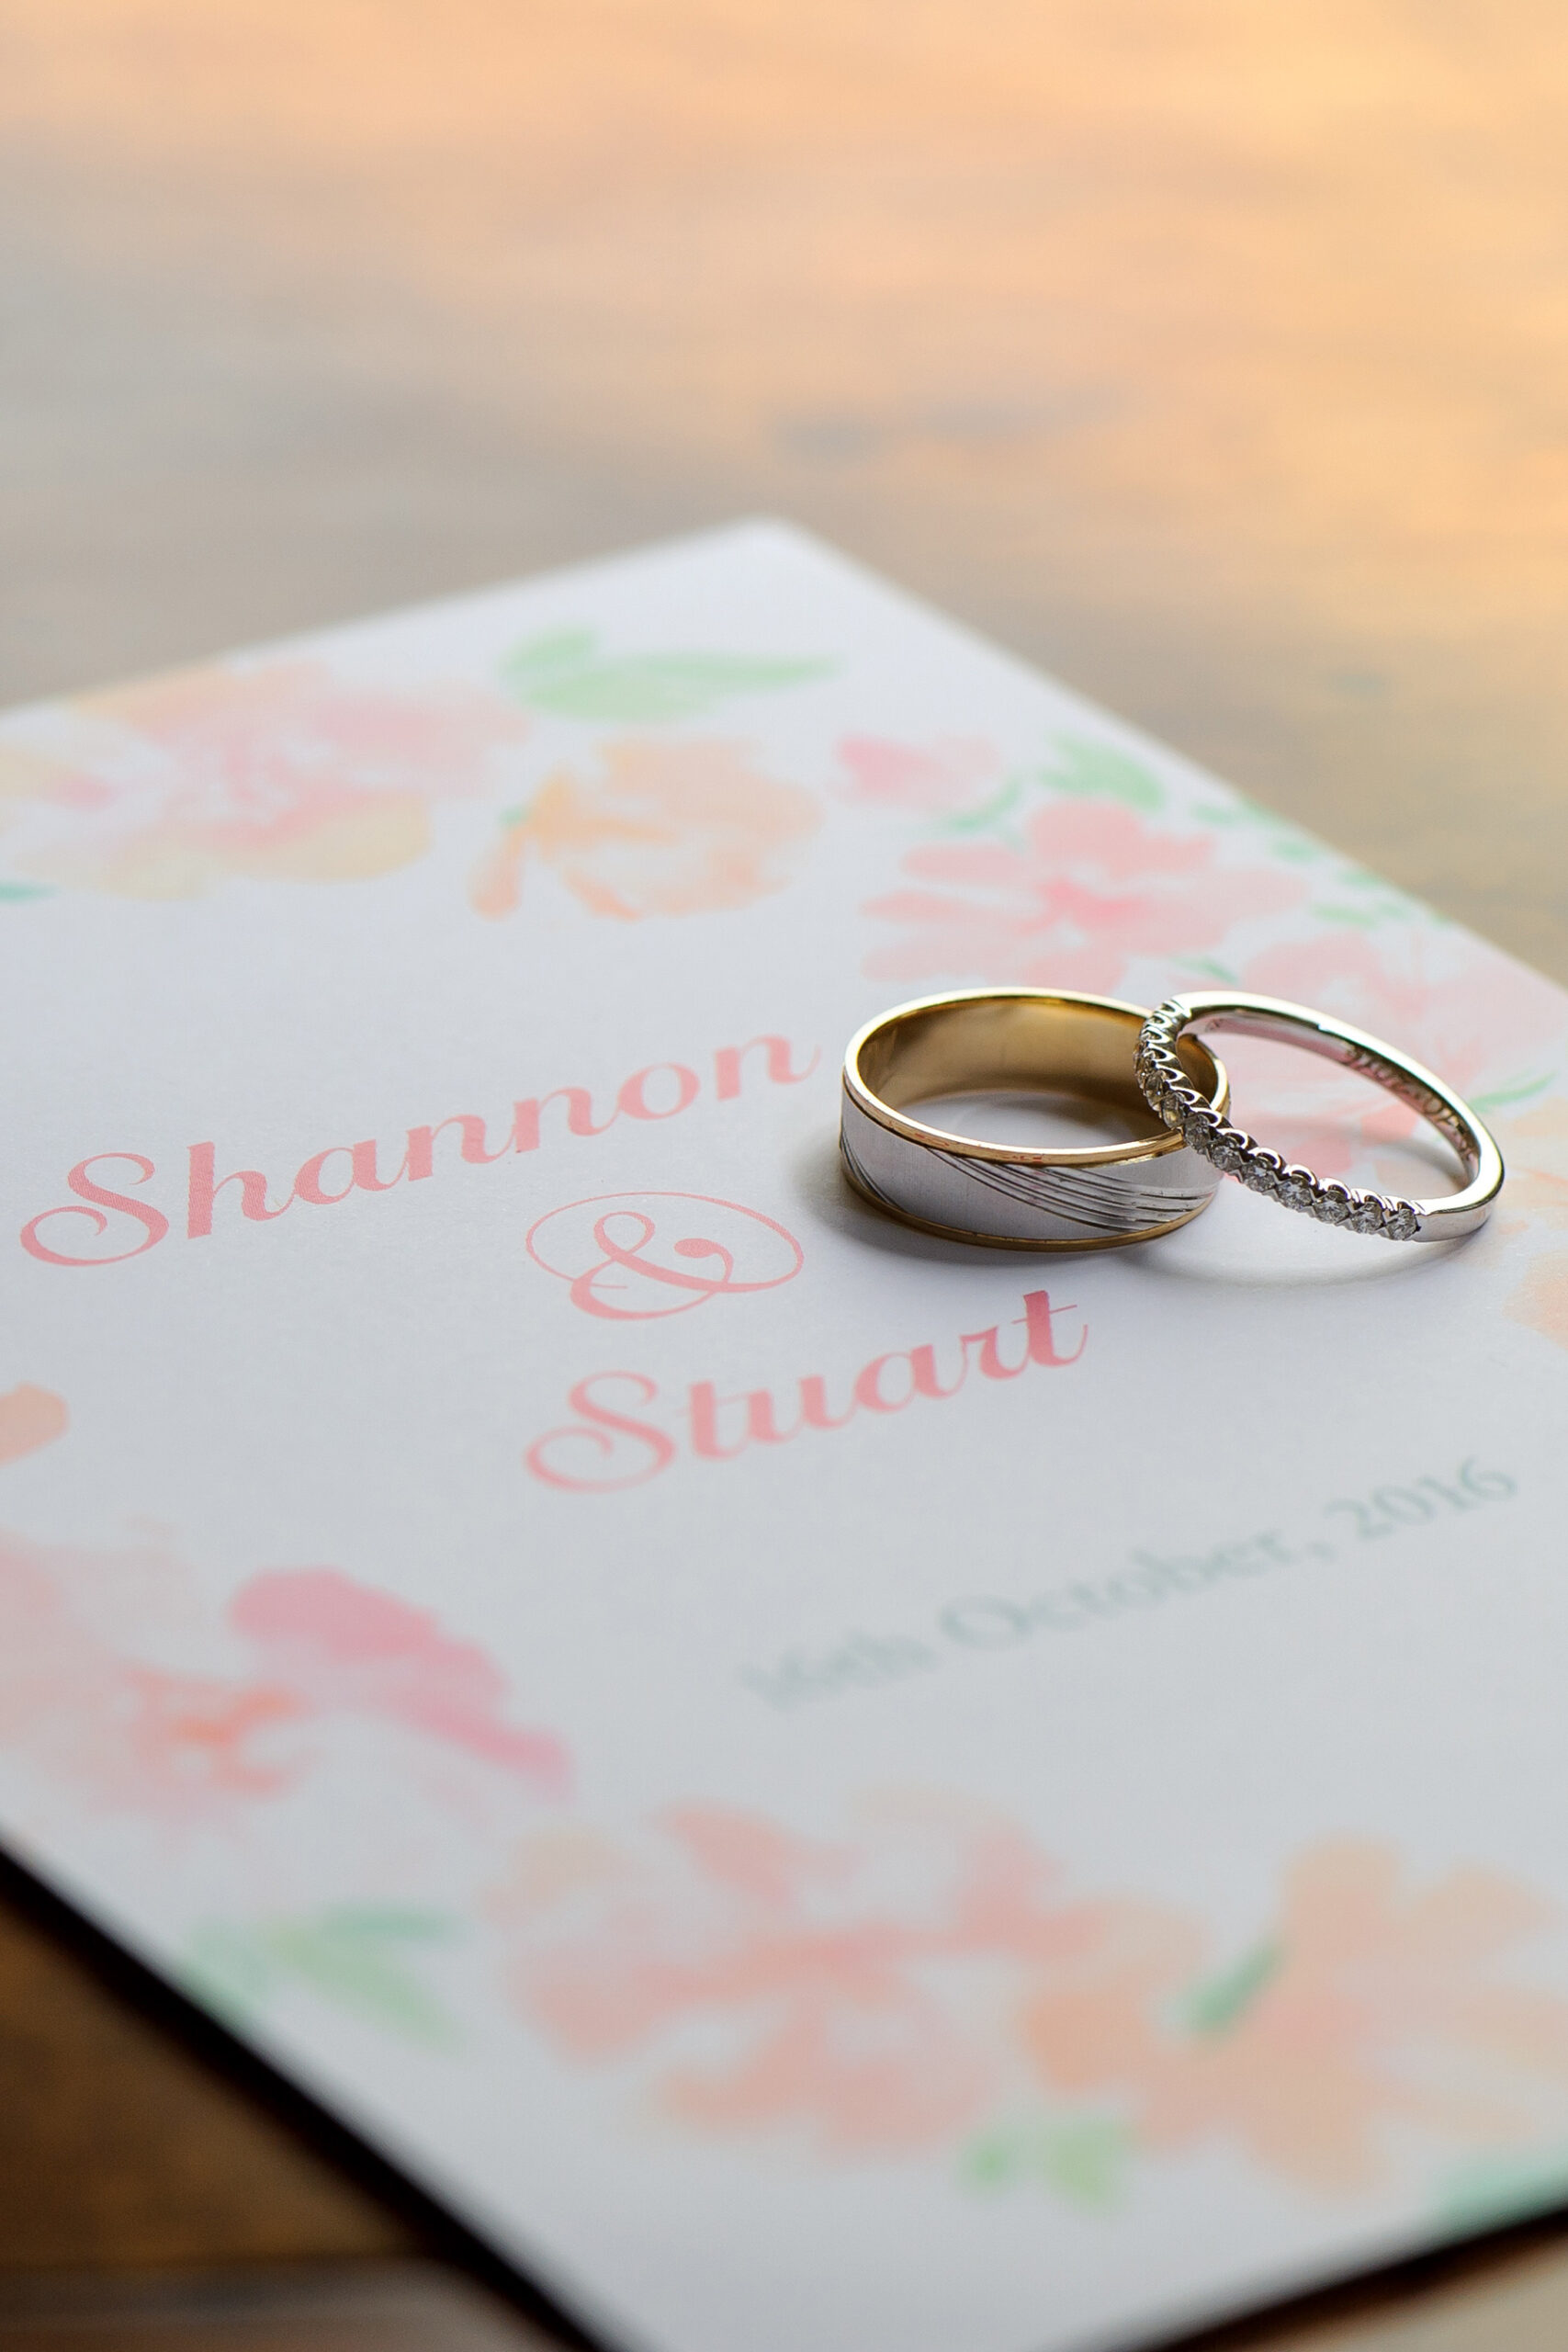 Shannon_Stuart_Spring-Wedding_SBS_001